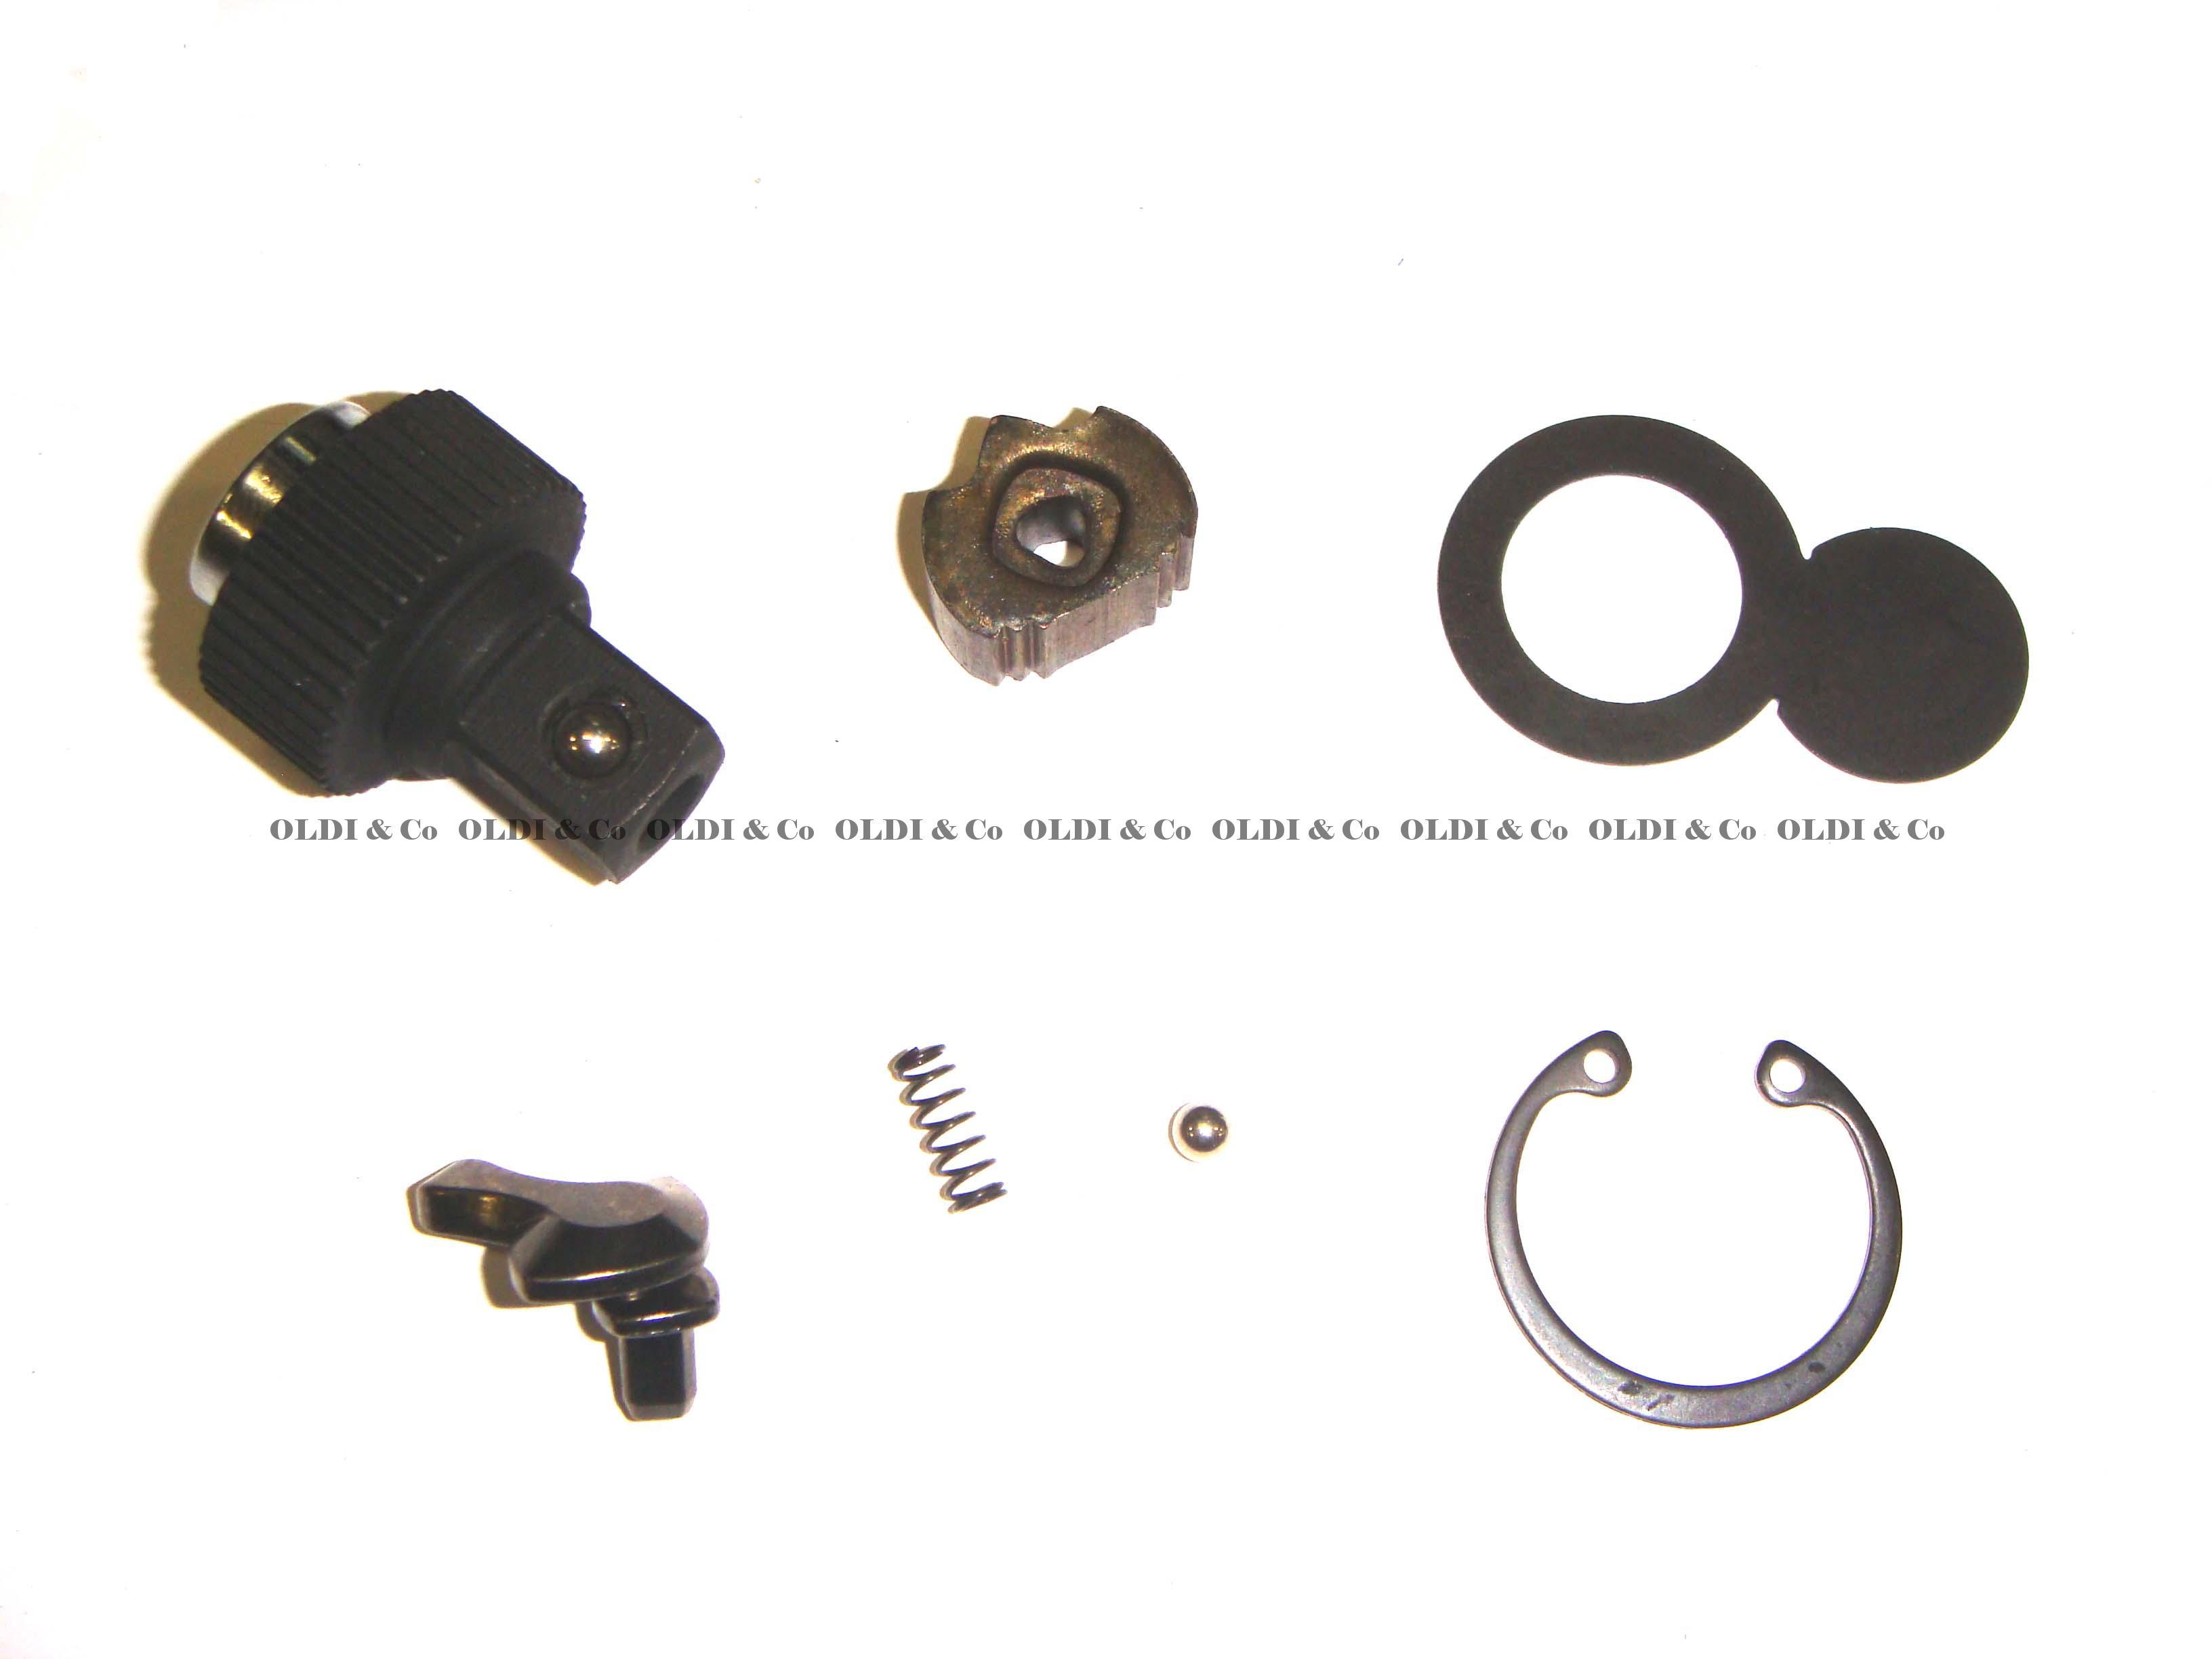 20.106.16040 Tools → Ratchet handle repair kit